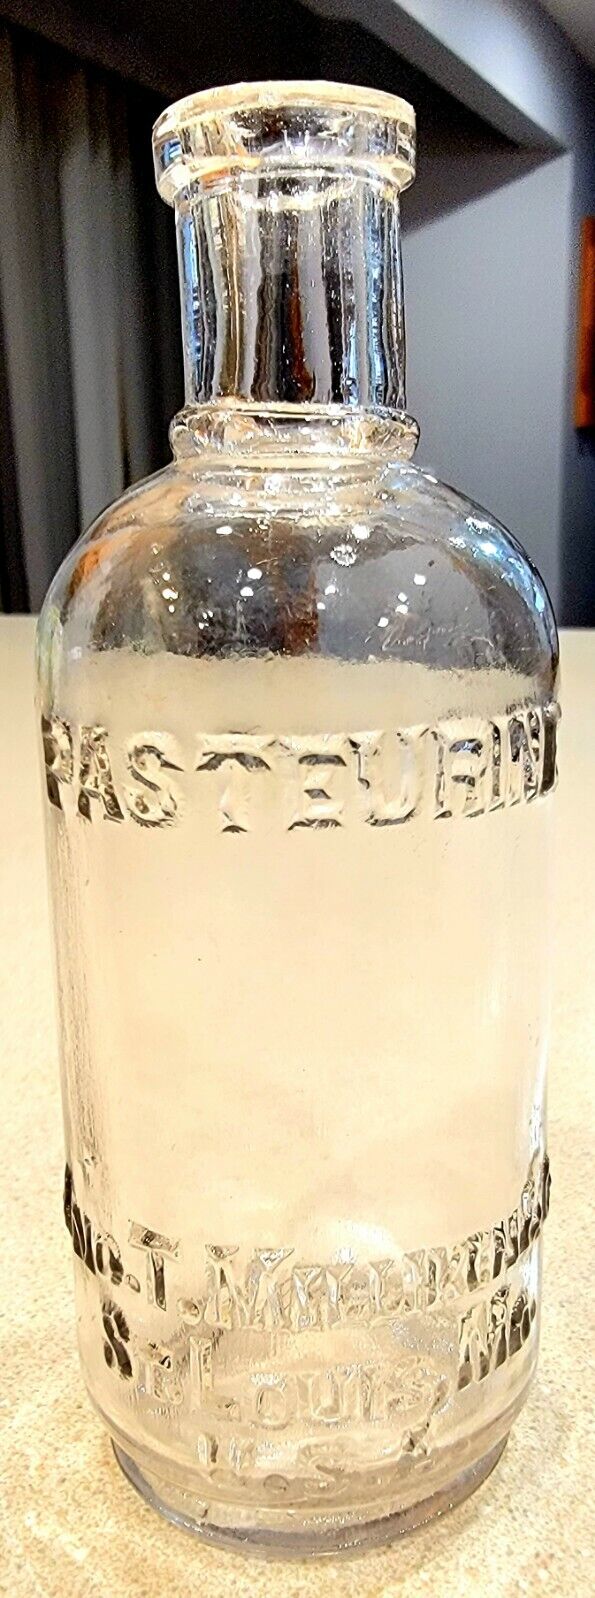 Vintage St Louis MO Pasteurine Bottle Jno T Milliken & Co. U.S.A Missouri 